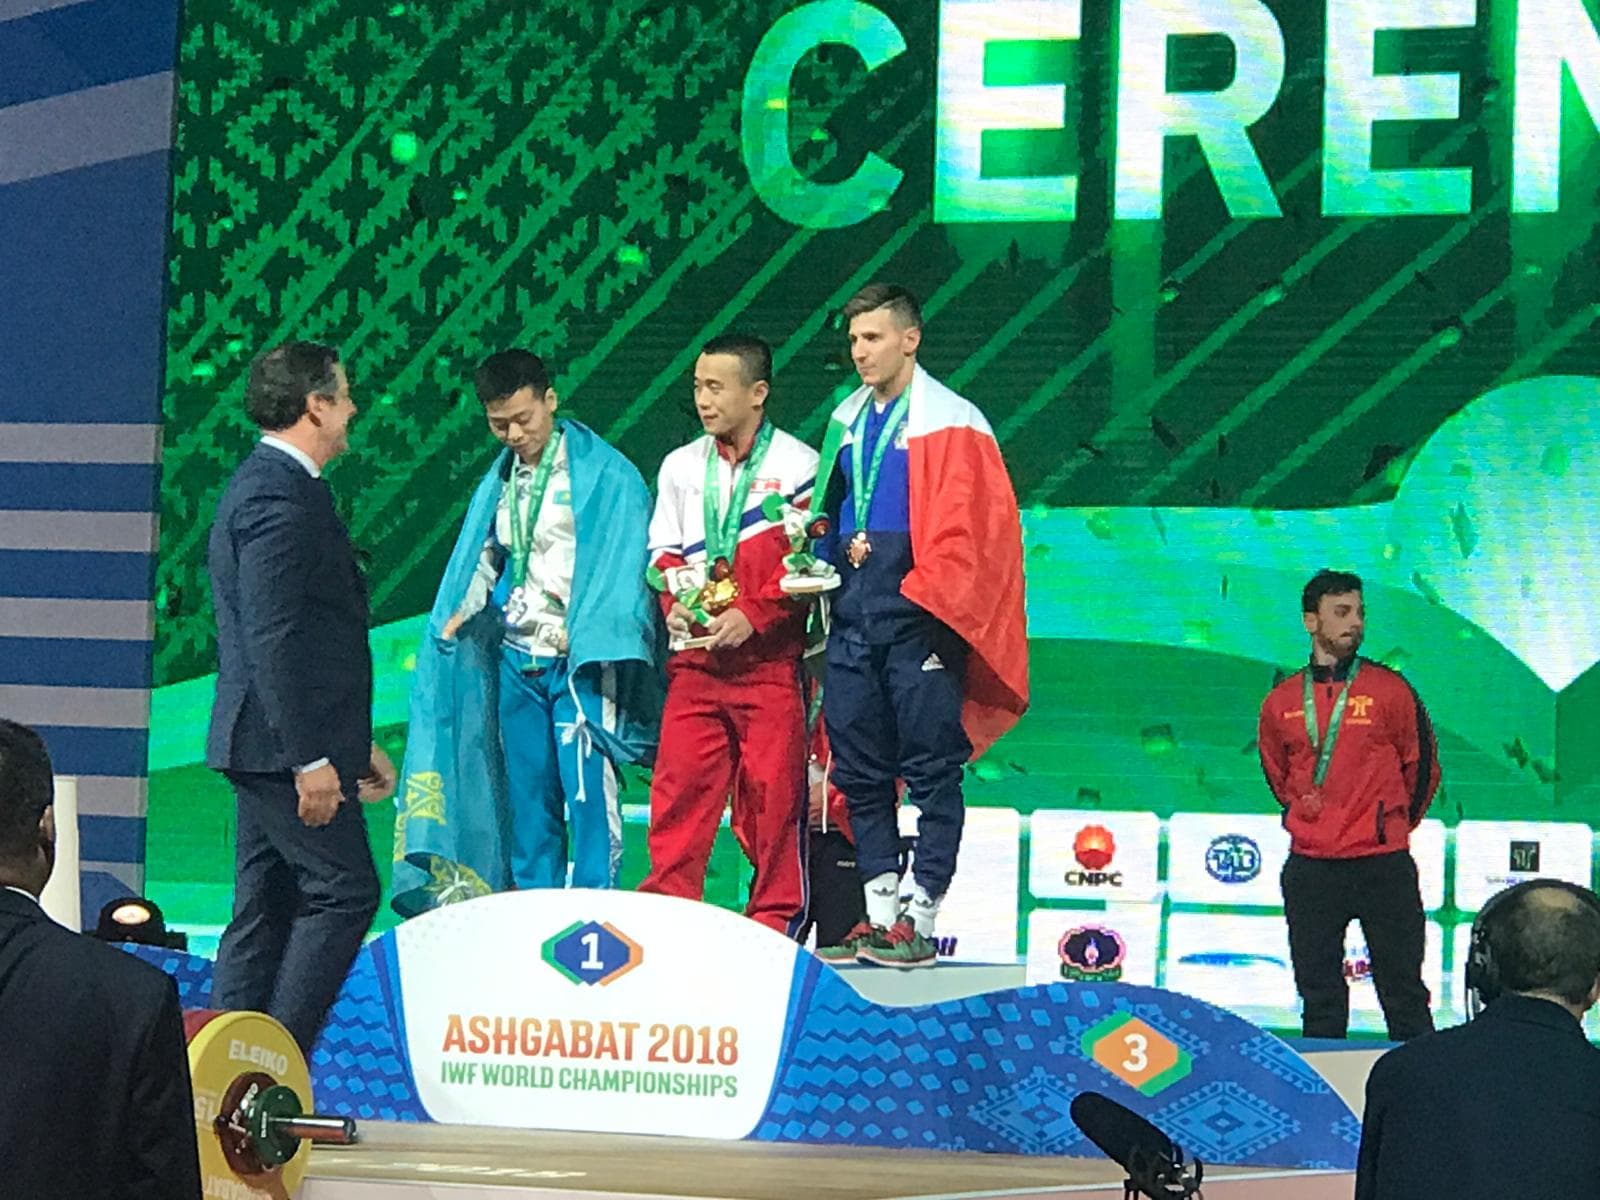 Mondiali, Scarantino di bronzo nei 55 kg in Turkmenistan. Primi punti preziosi per Tokyo 2020